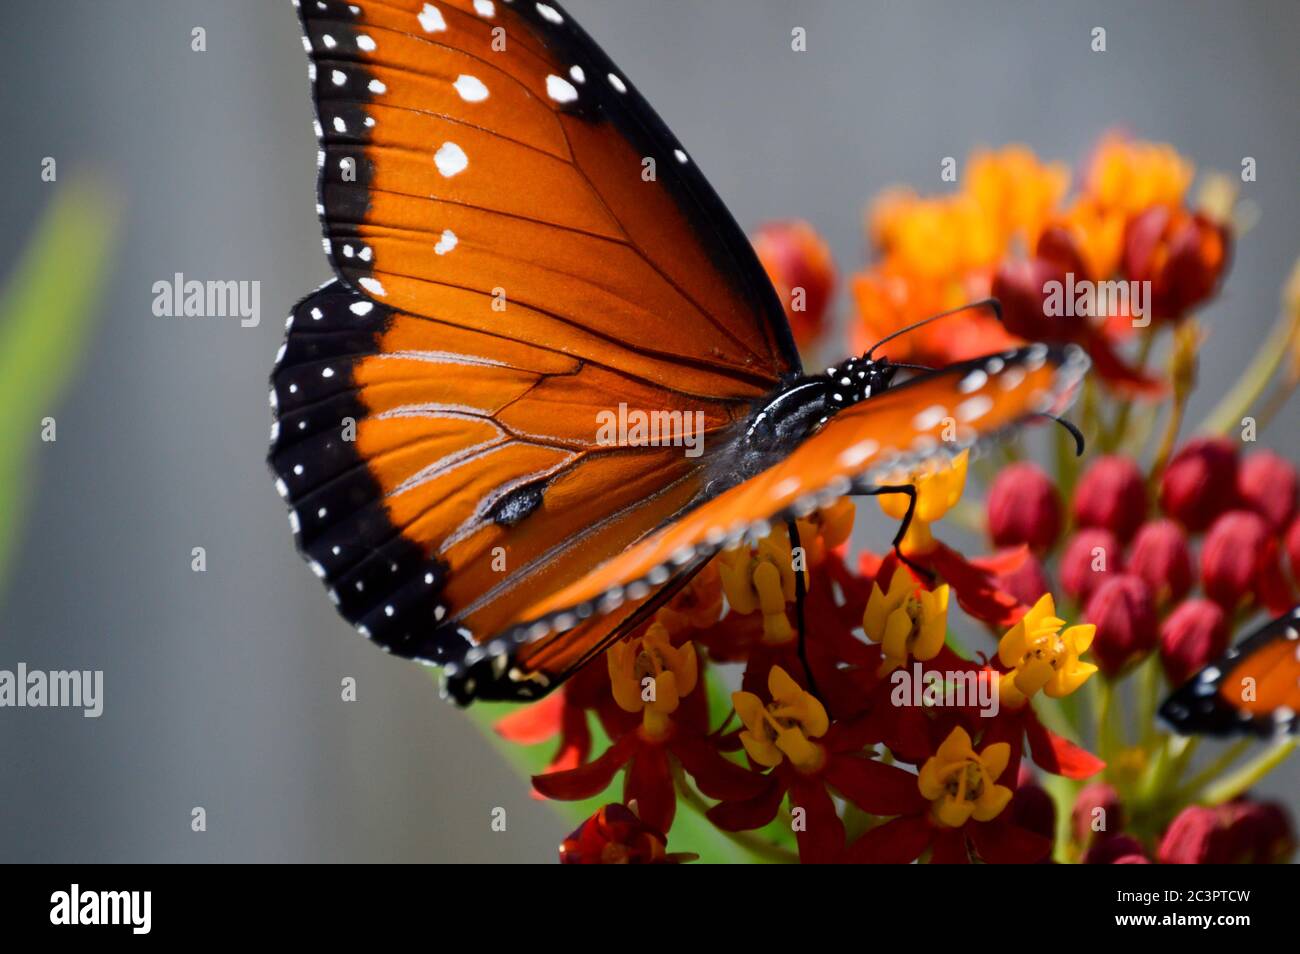 Königin Schmetterling nectaring auf tropischen Milchkrautblüten Stockfoto